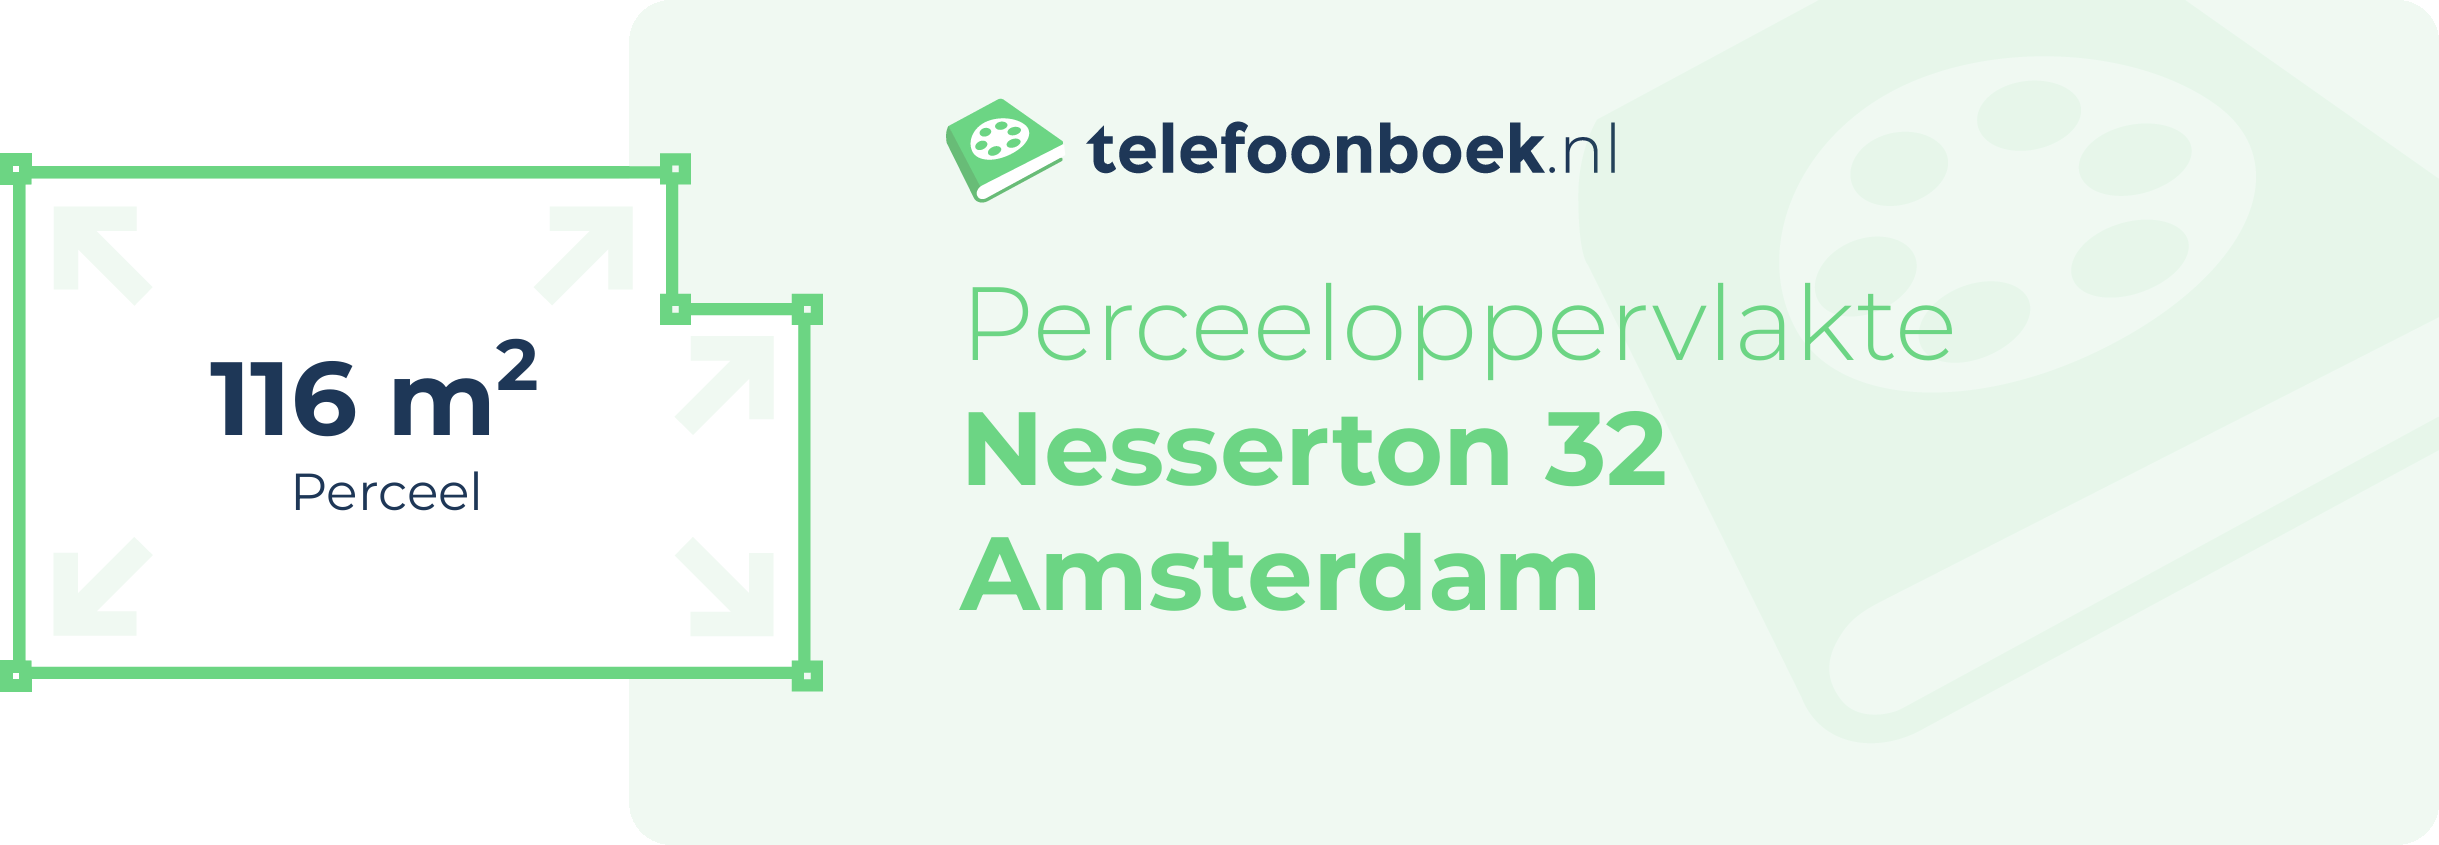 Perceeloppervlakte Nesserton 32 Amsterdam